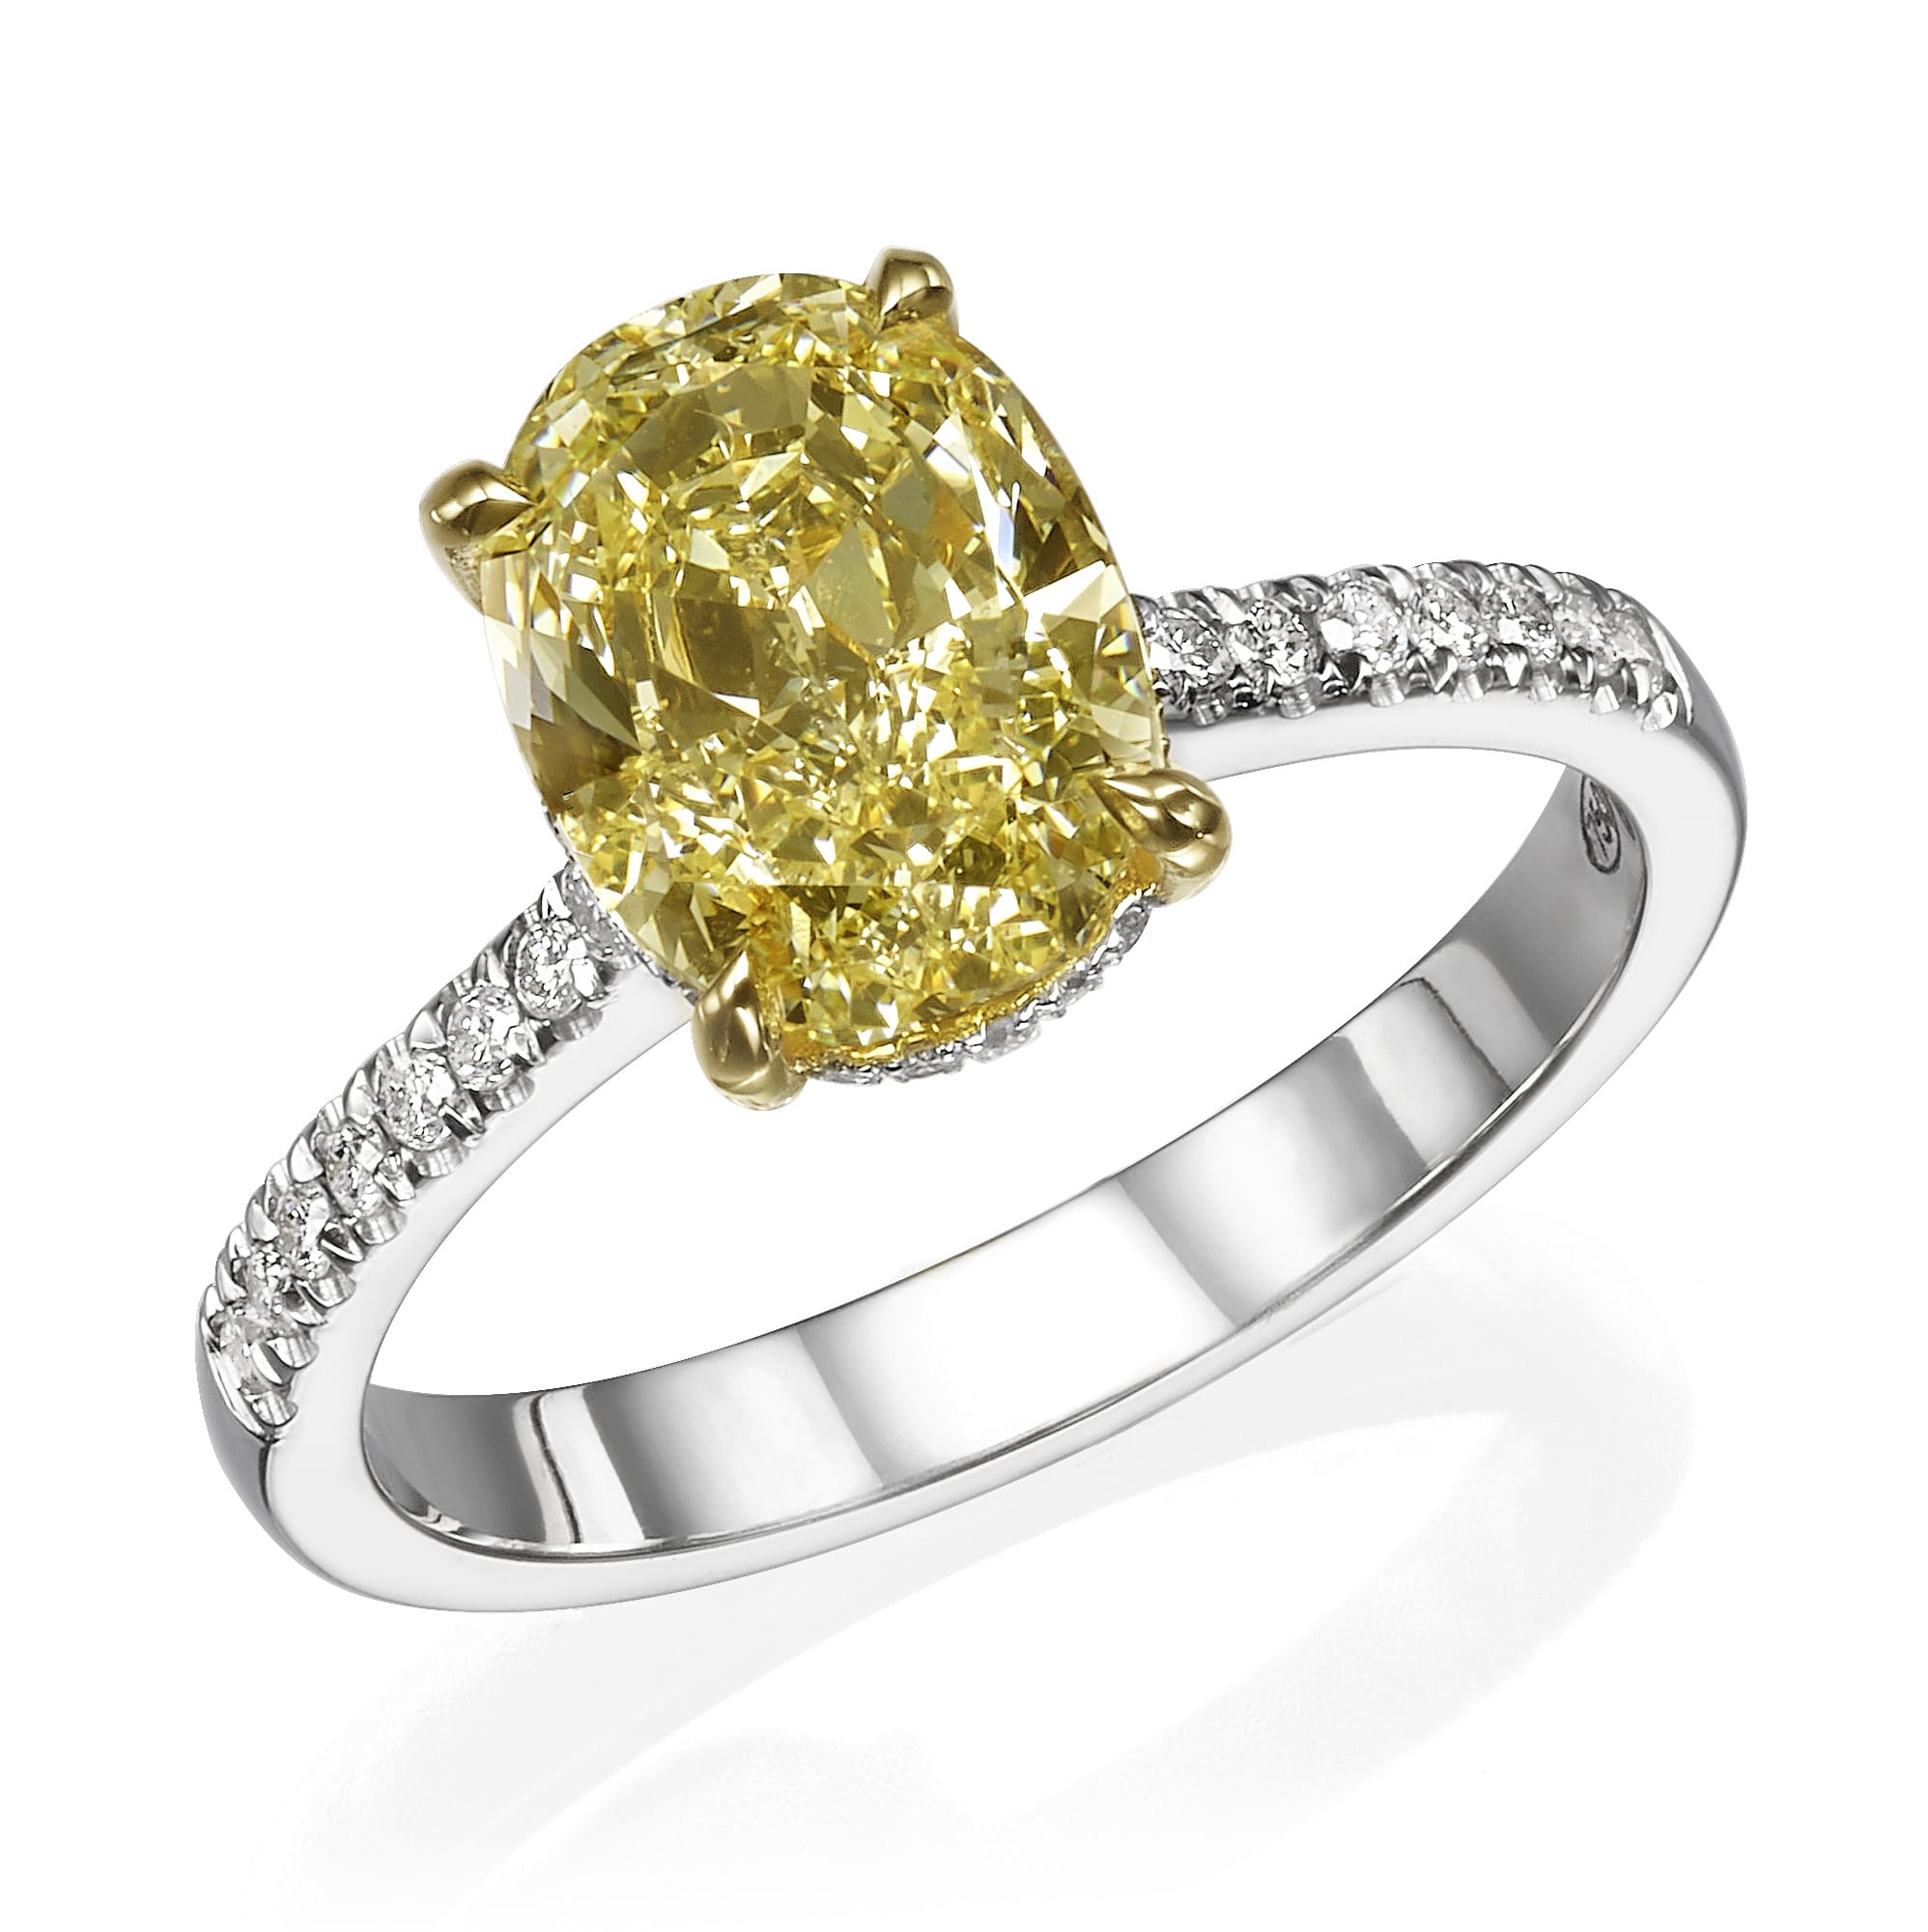 טבעת דגם אלישיה היא טבעת אלגנטית עם חלק מרכזי באבן חן בחיתוך אובלי צהוב מוקפת יהלומים קטנים יותר על רצועת כסף.